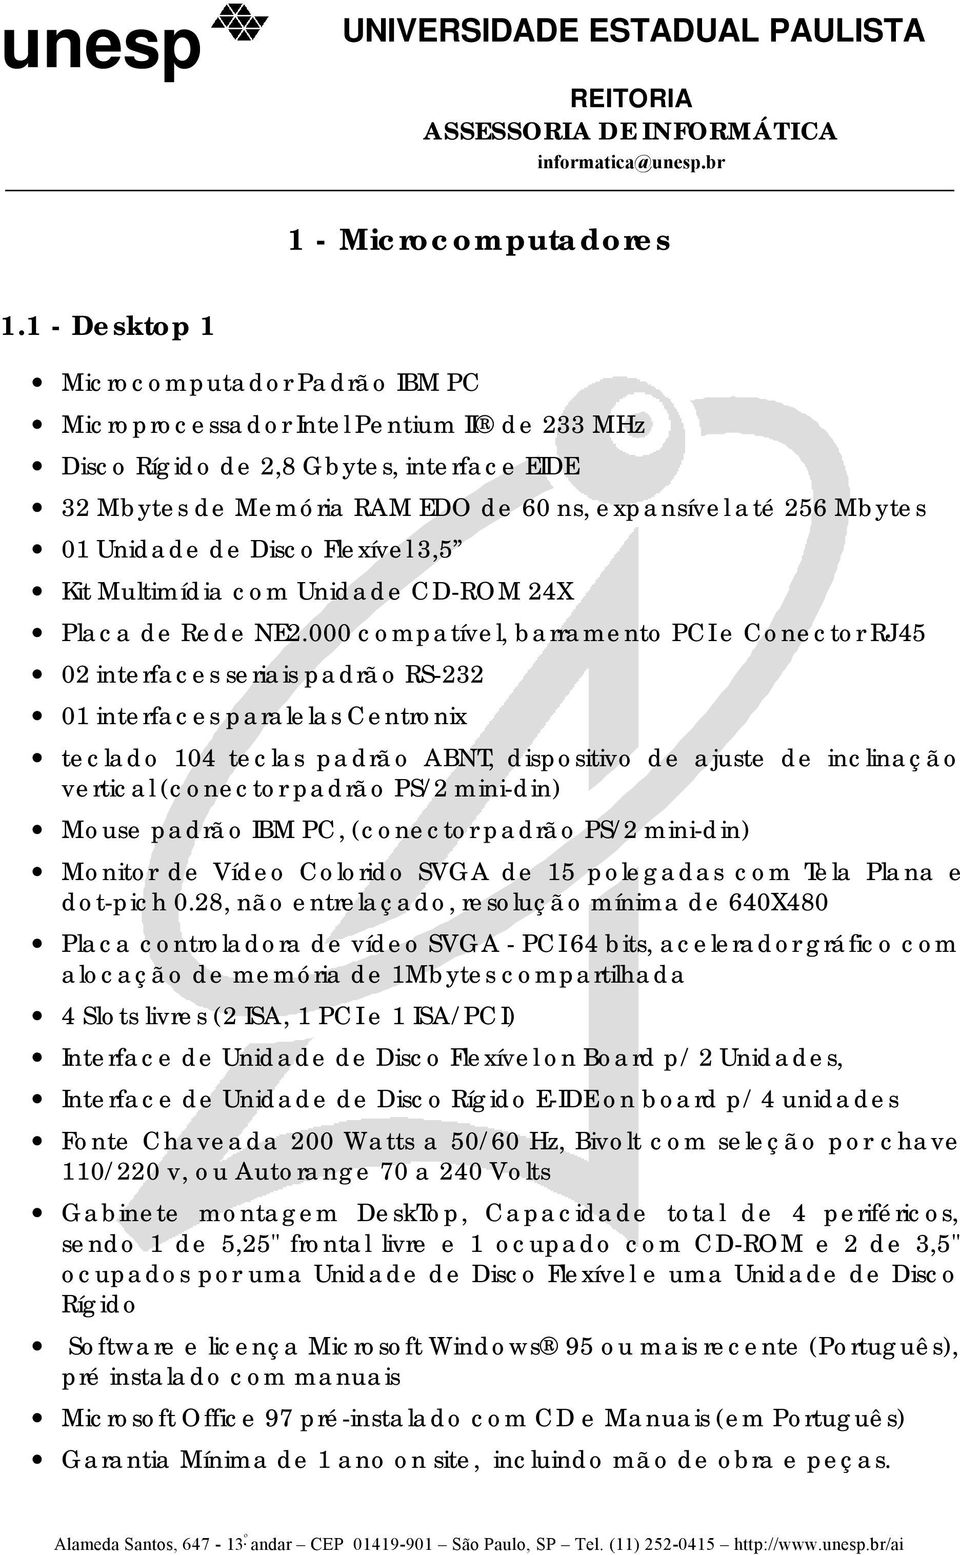 Unidade de Disco Flexível 3,5 Kit Multimídia com Unidade CD-ROM 24X Placa de Rede NE2.